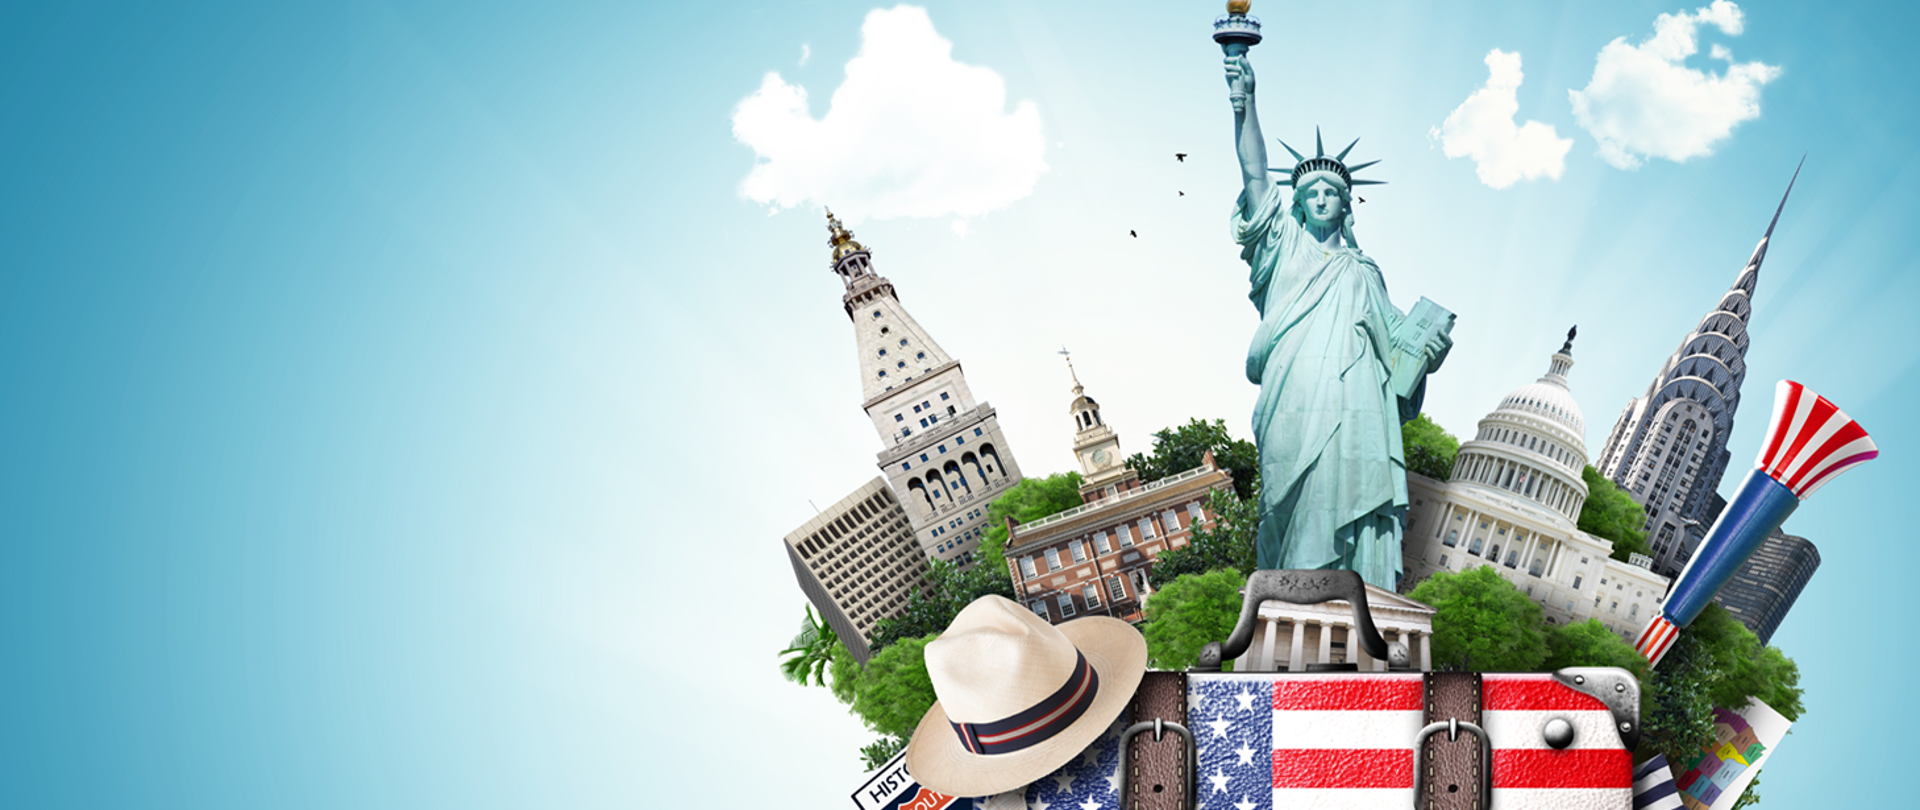 Informacja dla podróżujących do USA w związku ze zniesieniem ograniczeń dotyczących COVID-19